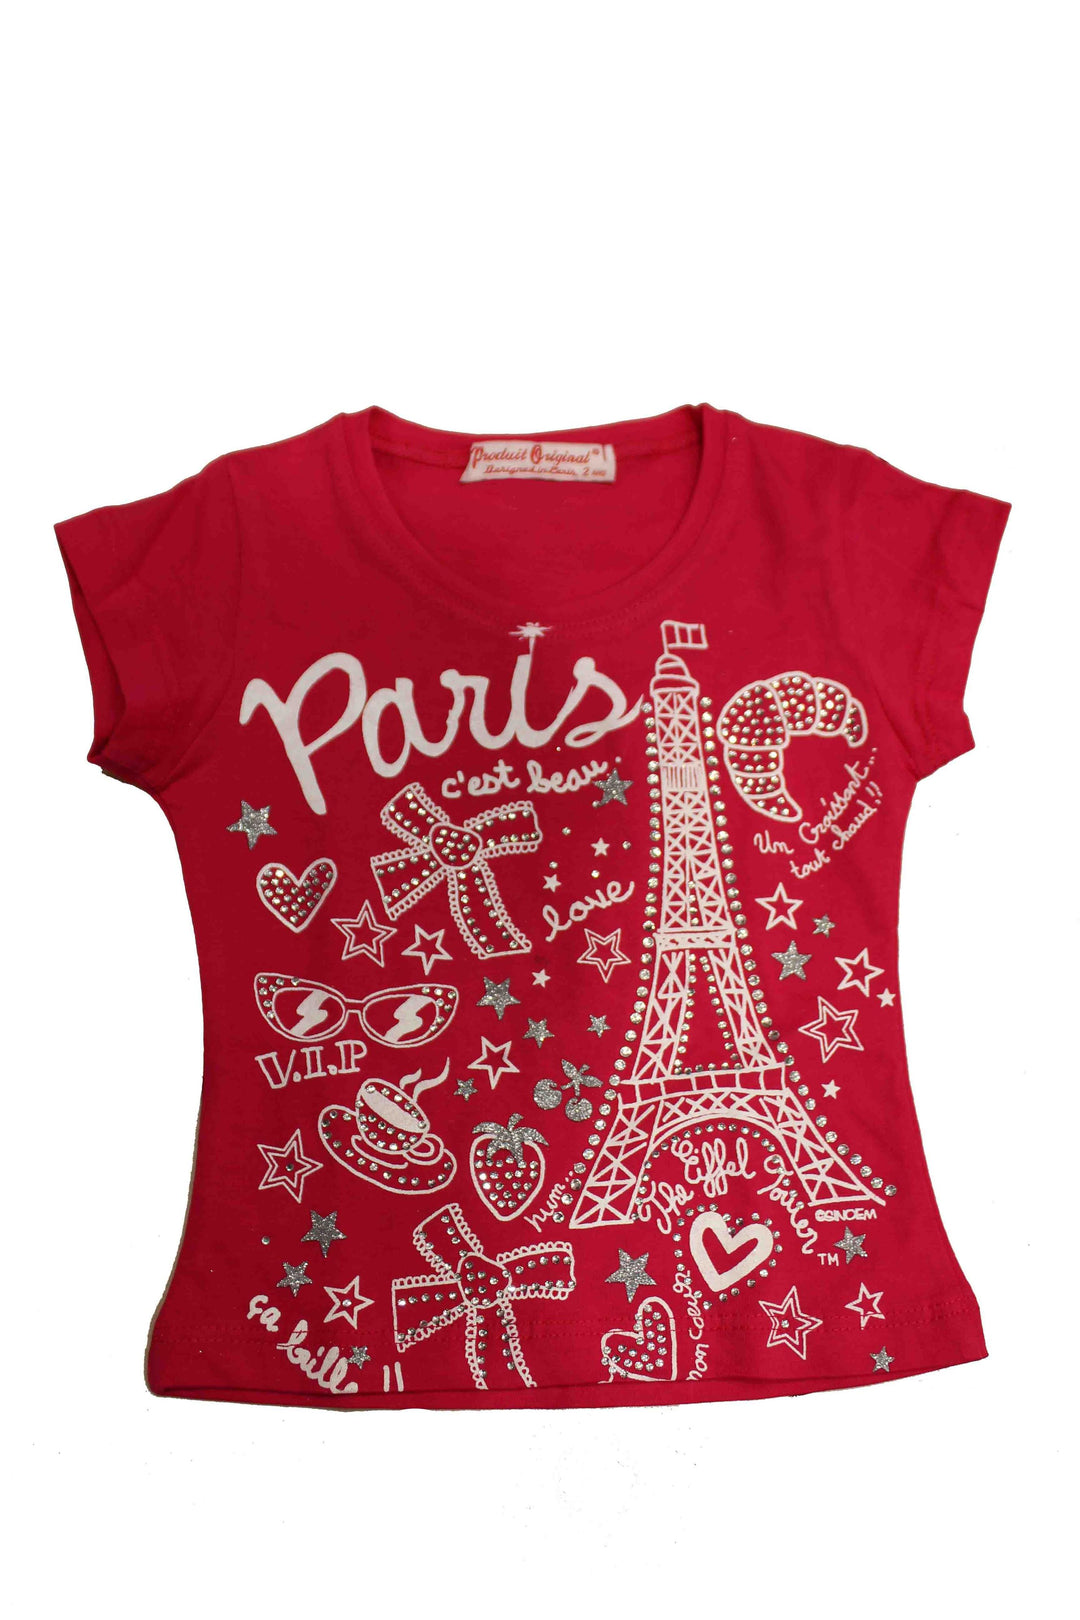 T-shirts pour Enfant - Souvenirs PARICI Paris Paris de Souvenir –